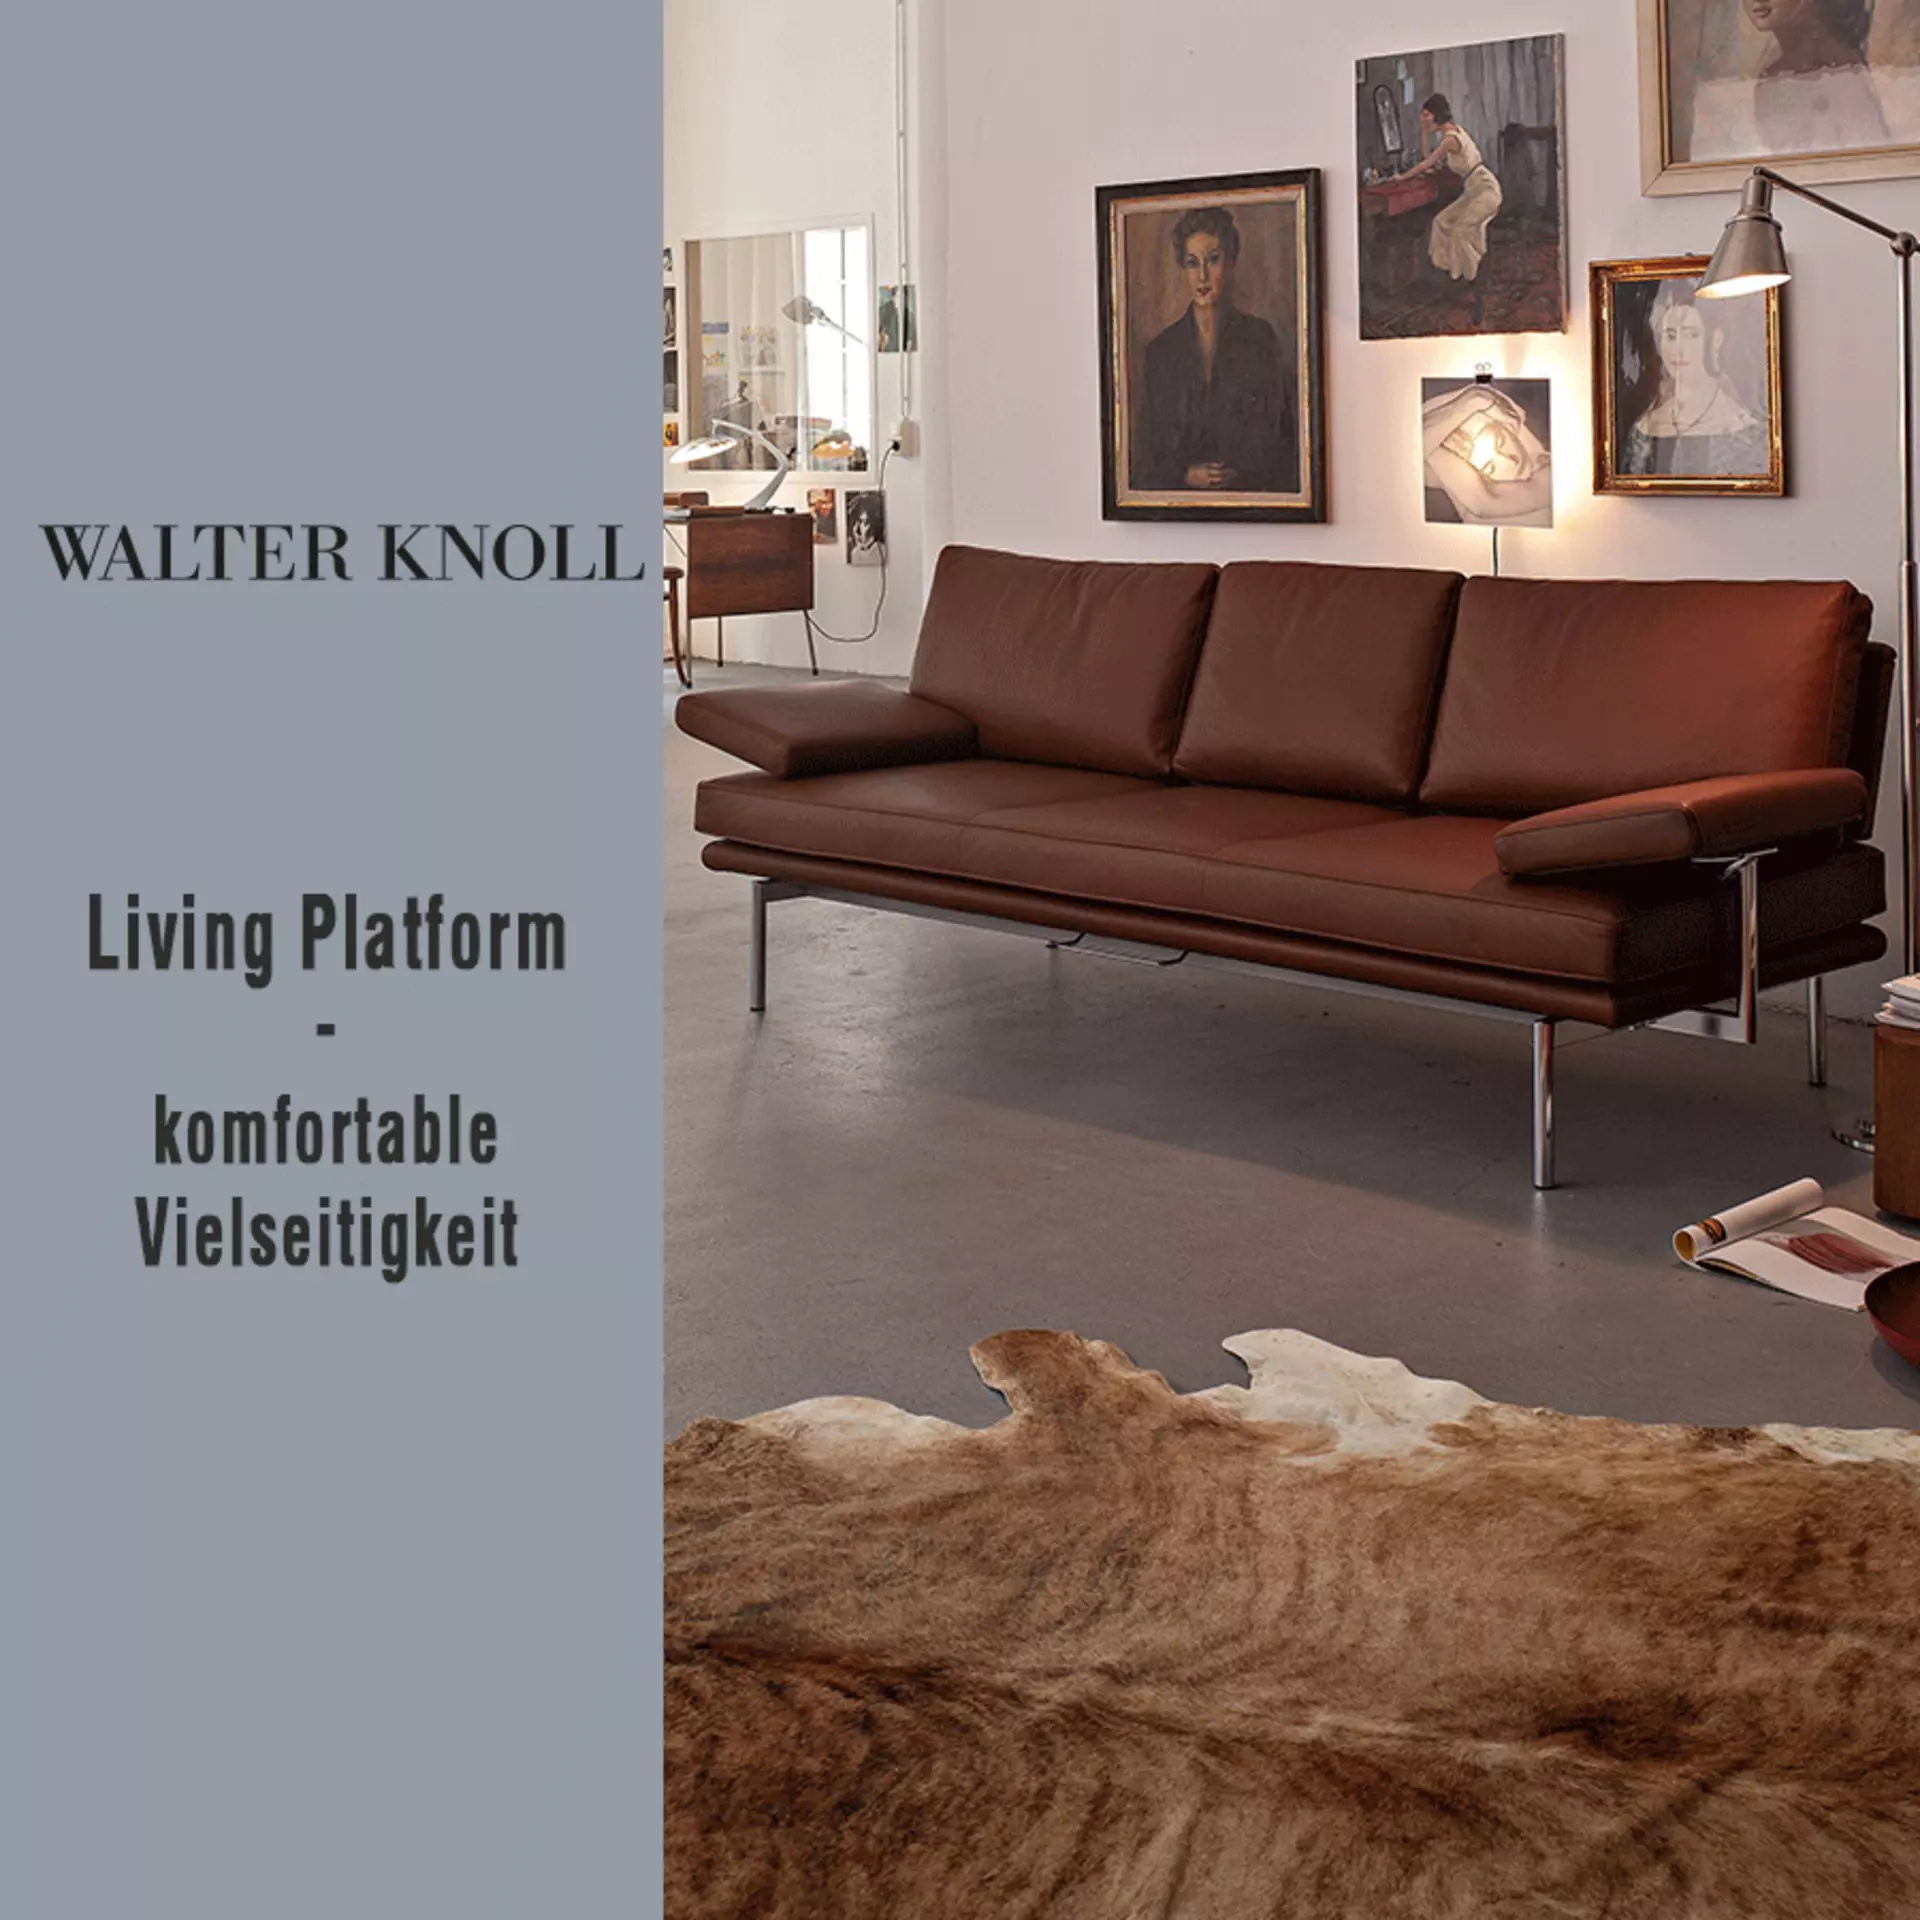 Walter Knoll - Living Platform. Komfortable Vielseitigkeit im exklusiven Angebot